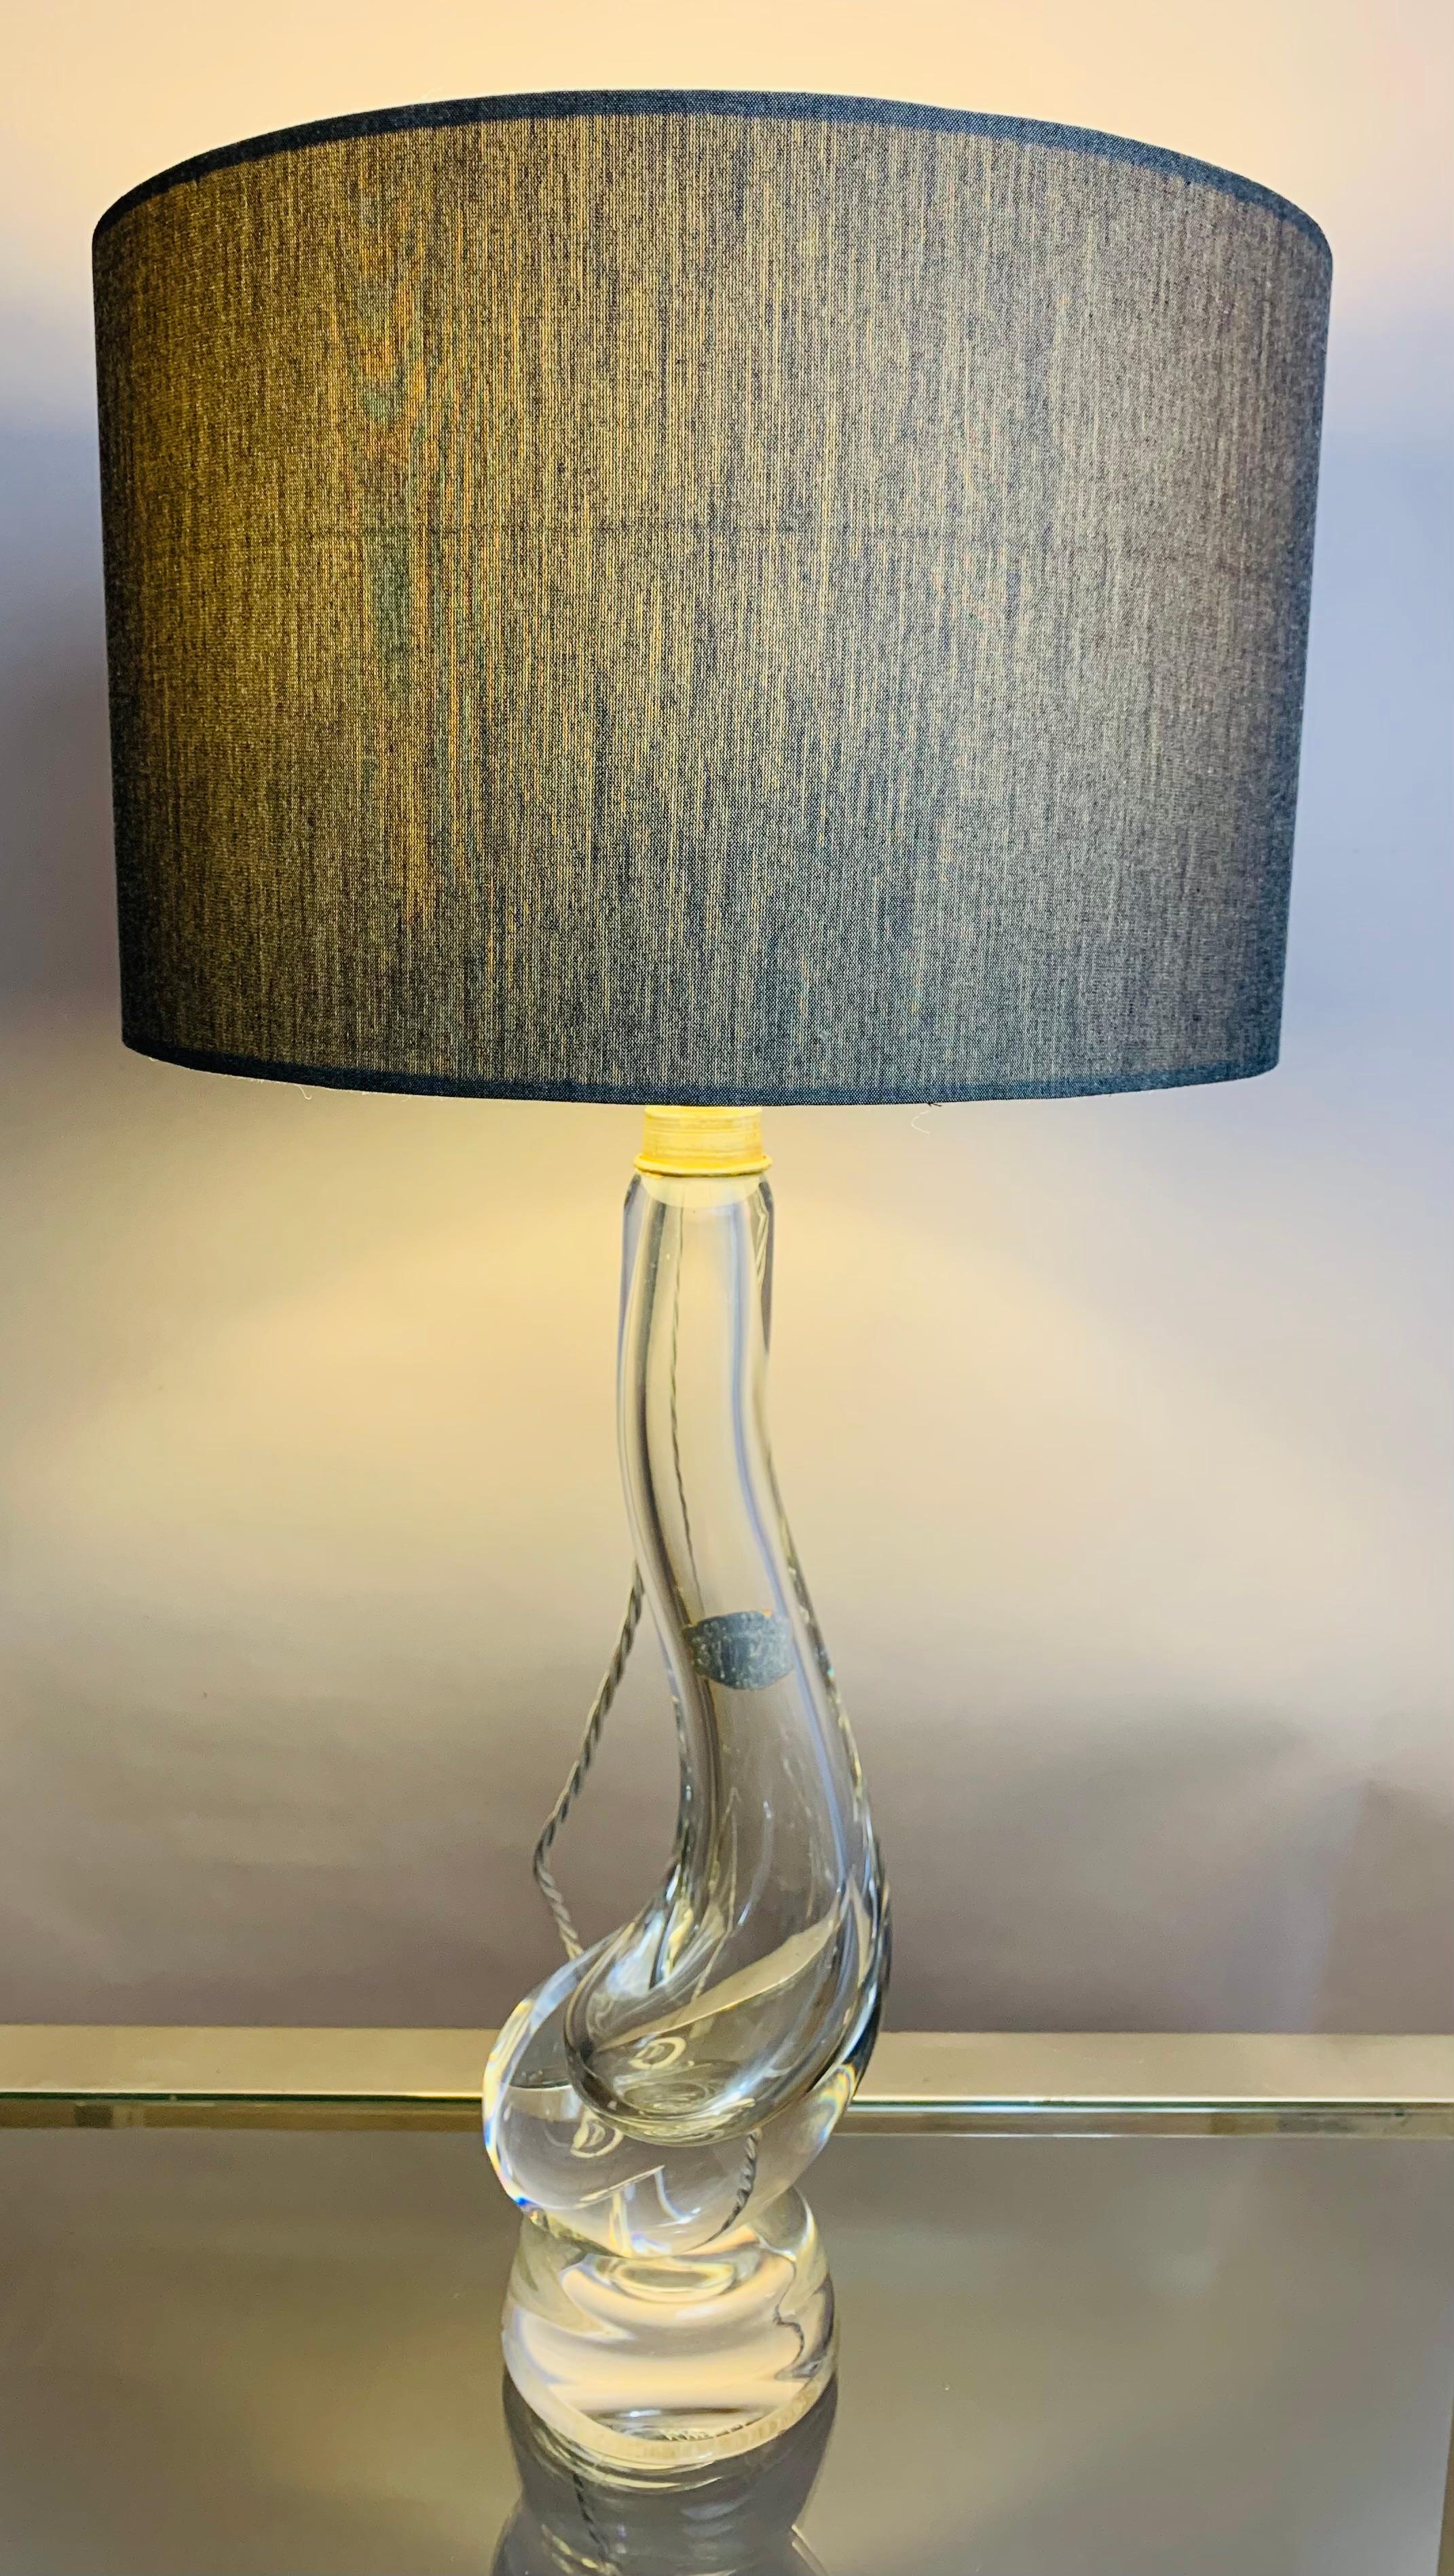 Verre « Swan » soufflé à la main en cristal transparent du Val Saint Lambert, base de la lampe. La lampe a été fabriquée dans les années 1950 en Belgique. 

La lampe est équipée d'une douille d'ampoule chromée et porte l'étiquette d'origine Val